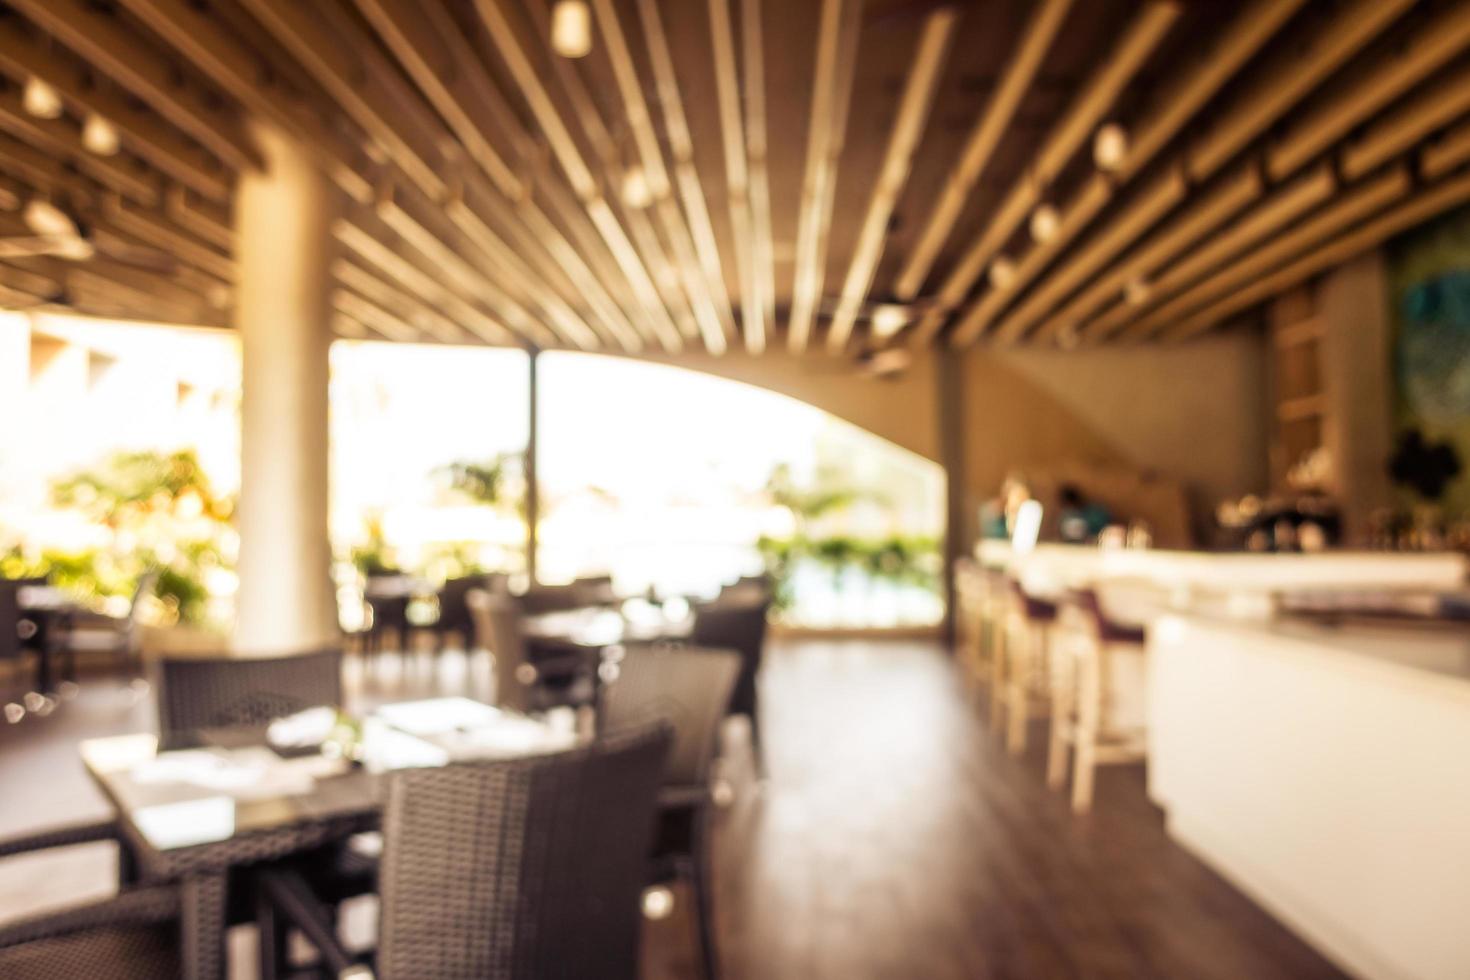 abstrakt oskärpa och defokuserad restaurangbuffé i hotellort foto